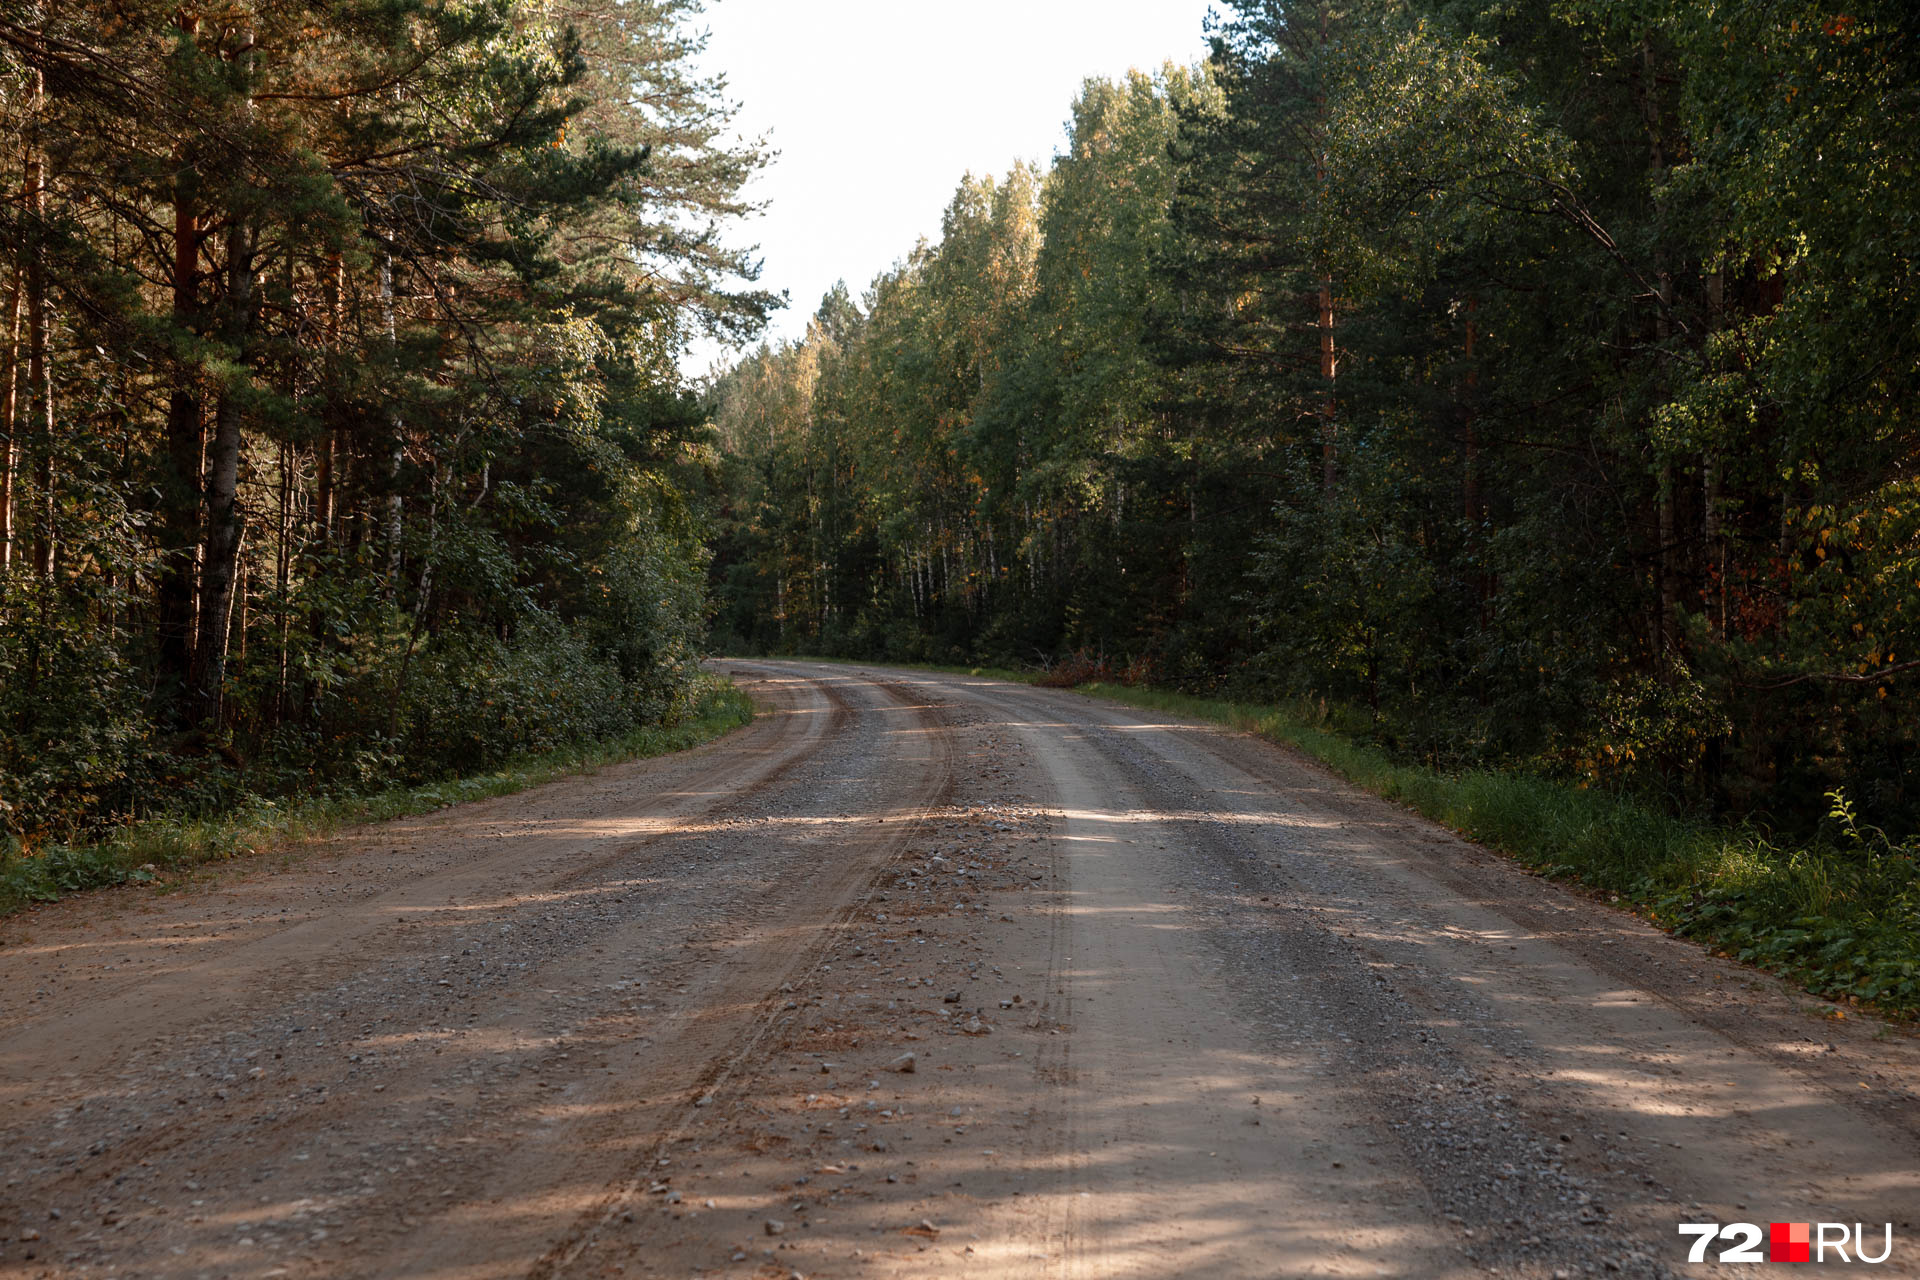 Извилистая с щебнем дорога, ведущая из Юргинского в Новый Тап. Иногда из одной части леса в другую здесь перебегают животные — косули и лоси